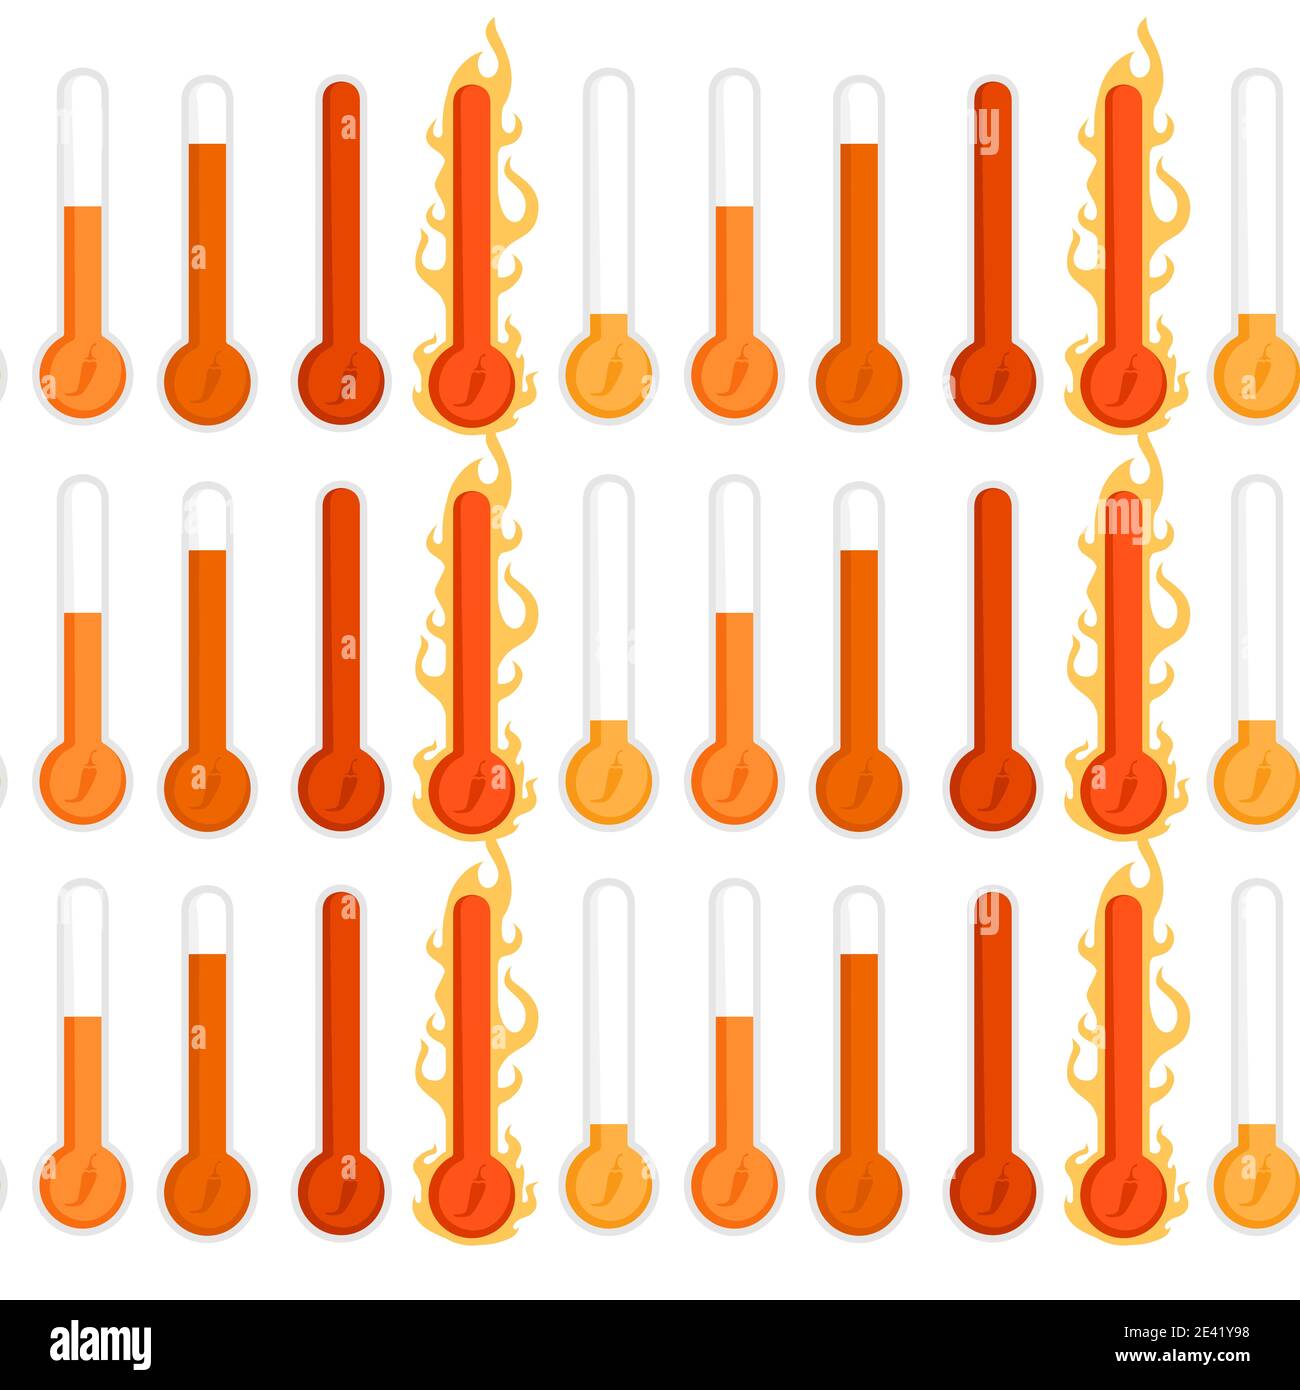 Échelle de chaleur au poivre de Scoville à motif sans couture, peu épicée à très épicée illustration vectorielle active sur fond blanc Illustration de Vecteur